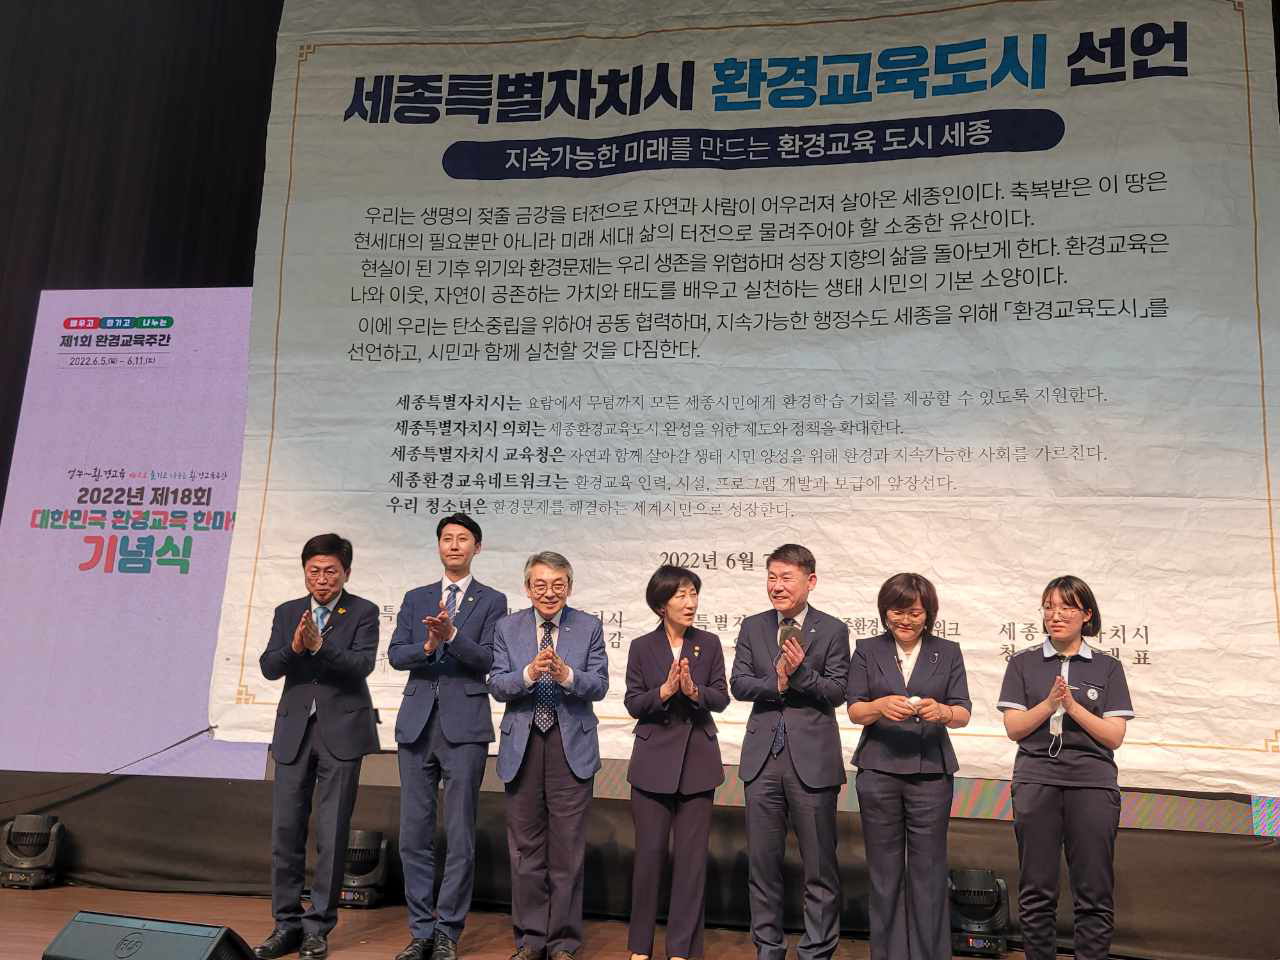 세종시는 7일 정부세종컨벤션센터에서 환경부, 한국환경교육네트워크와 함께 '세종시 환경교육 도시 선포식'을 개최했다.